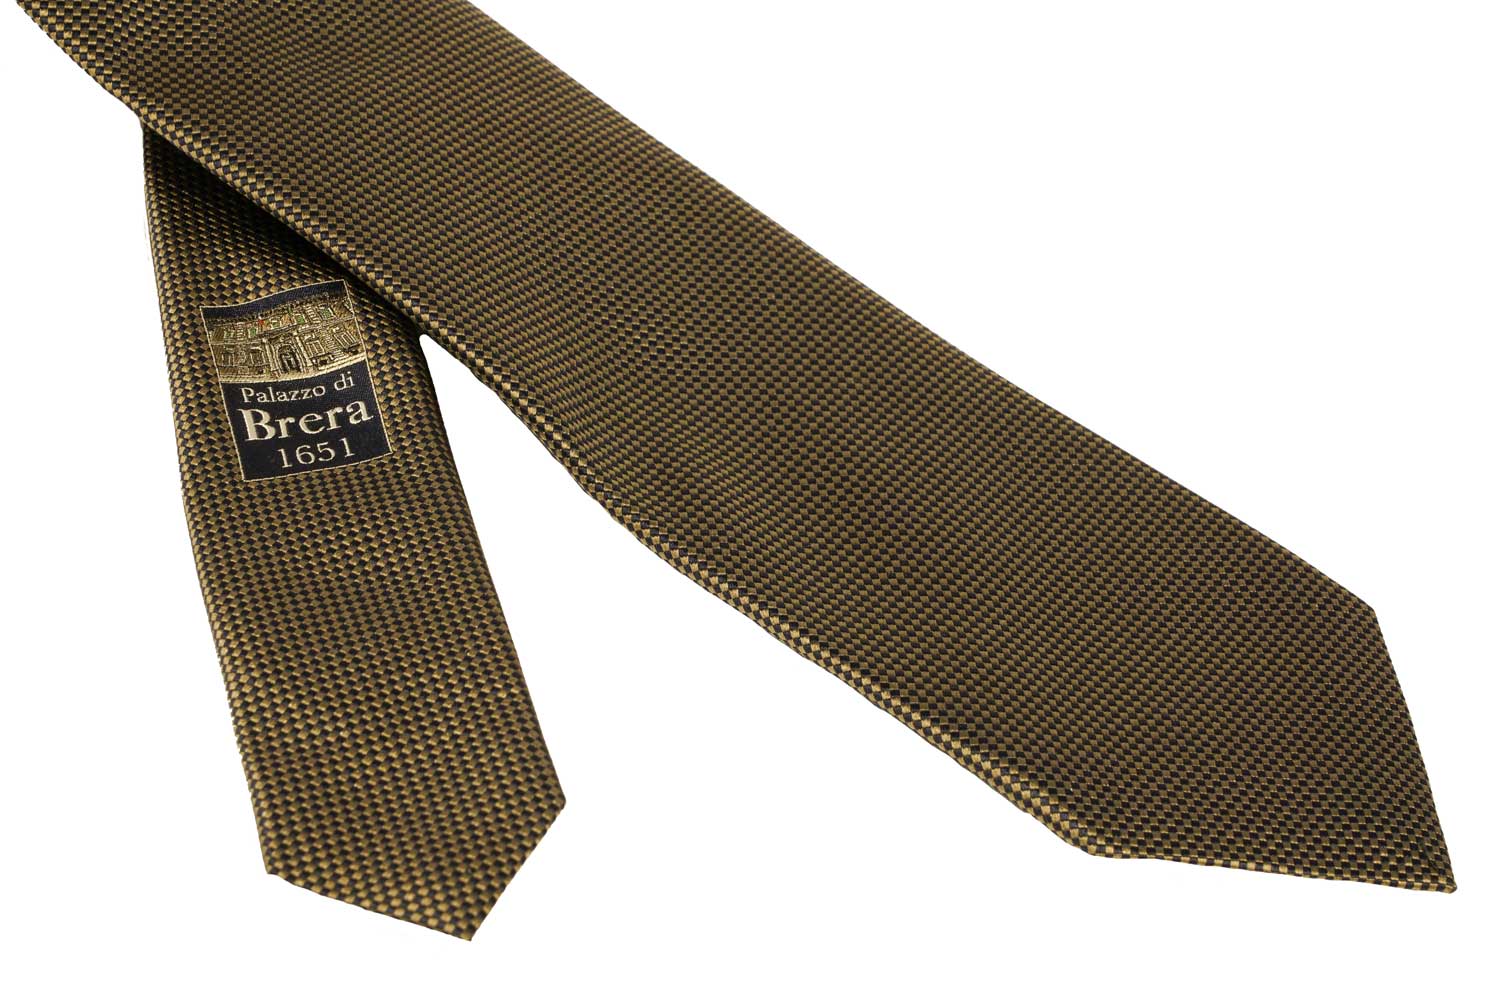 Cravatte limited edition Pinacoteca di Brera